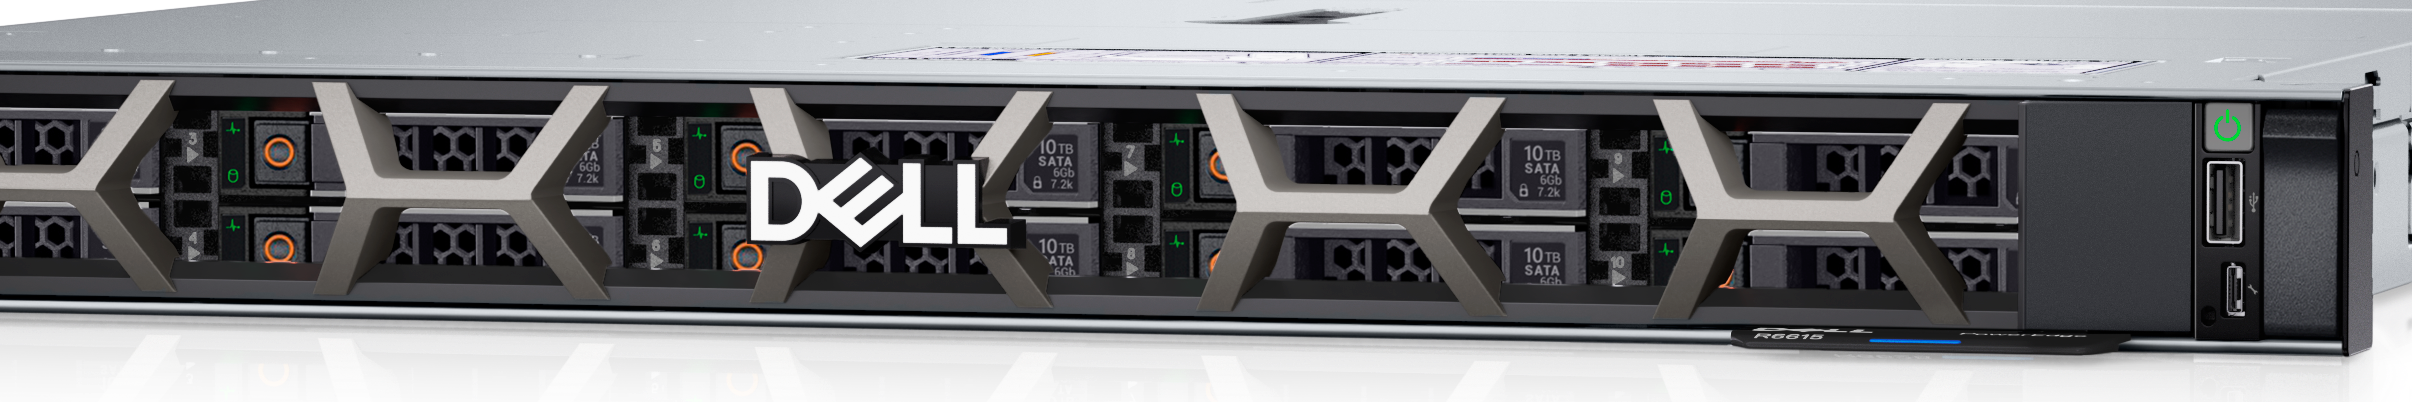 Dell PowerEdge R6615 Rack Server.